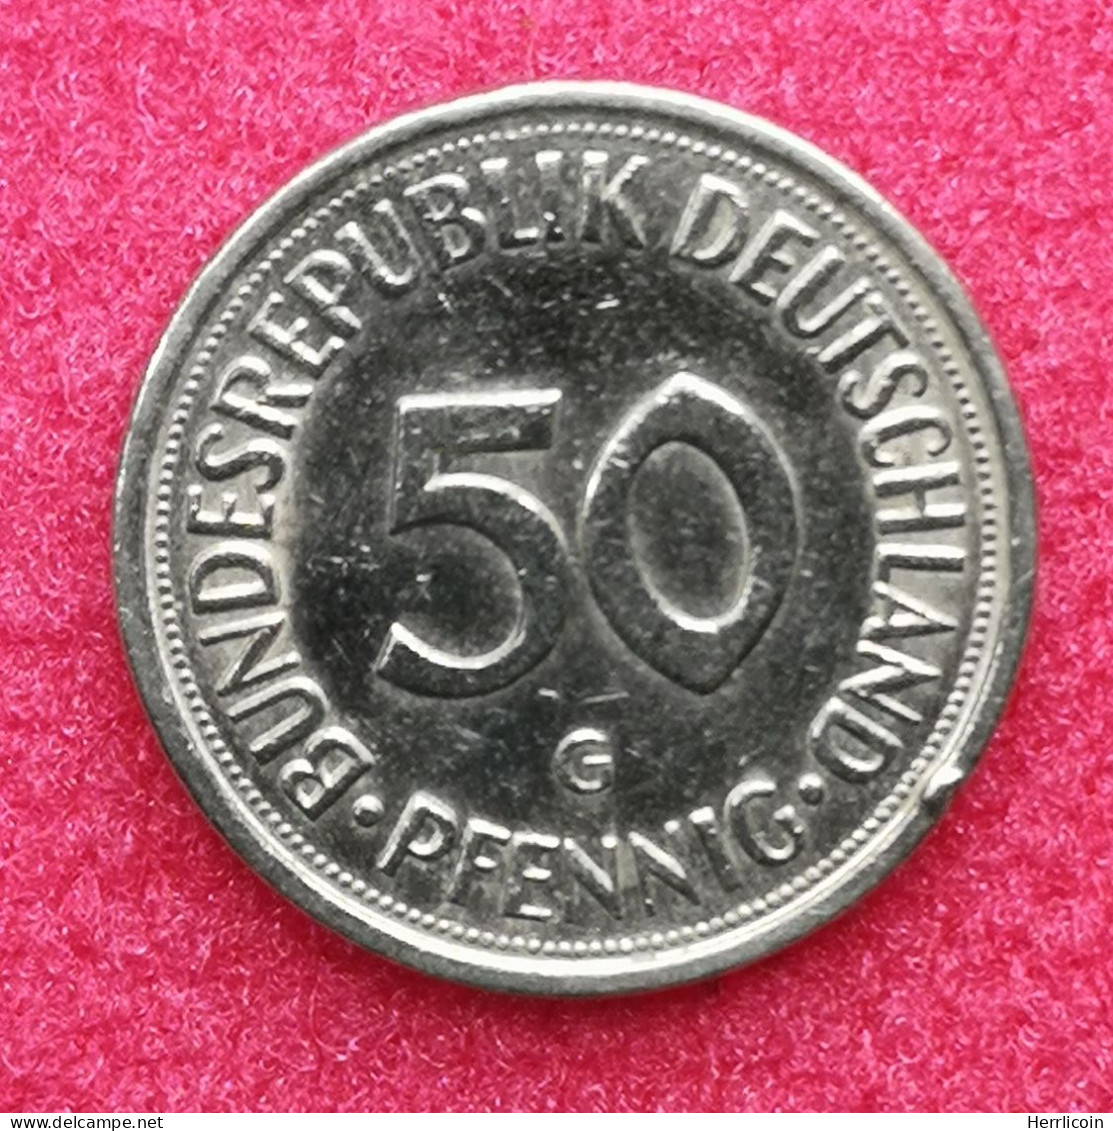 Monnaie Allemagne - 1980 G - 50 Pfennig Bundesrepublik Deutschland - 50 Pfennig